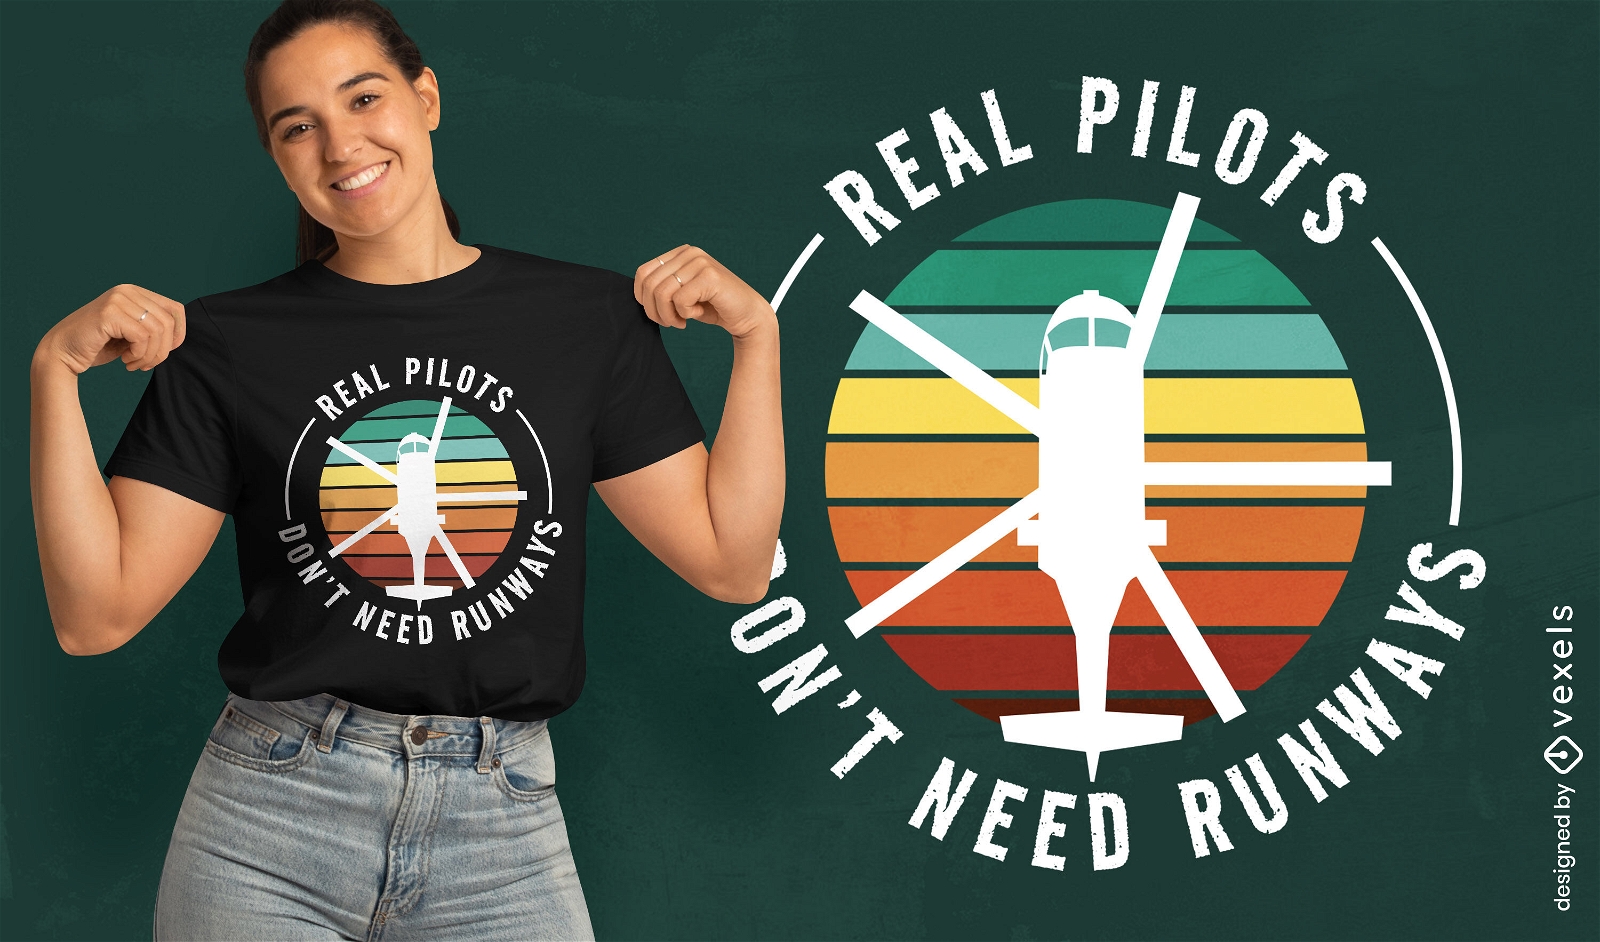 Pilotos de verdade não precisam de design de camisetas para pistas